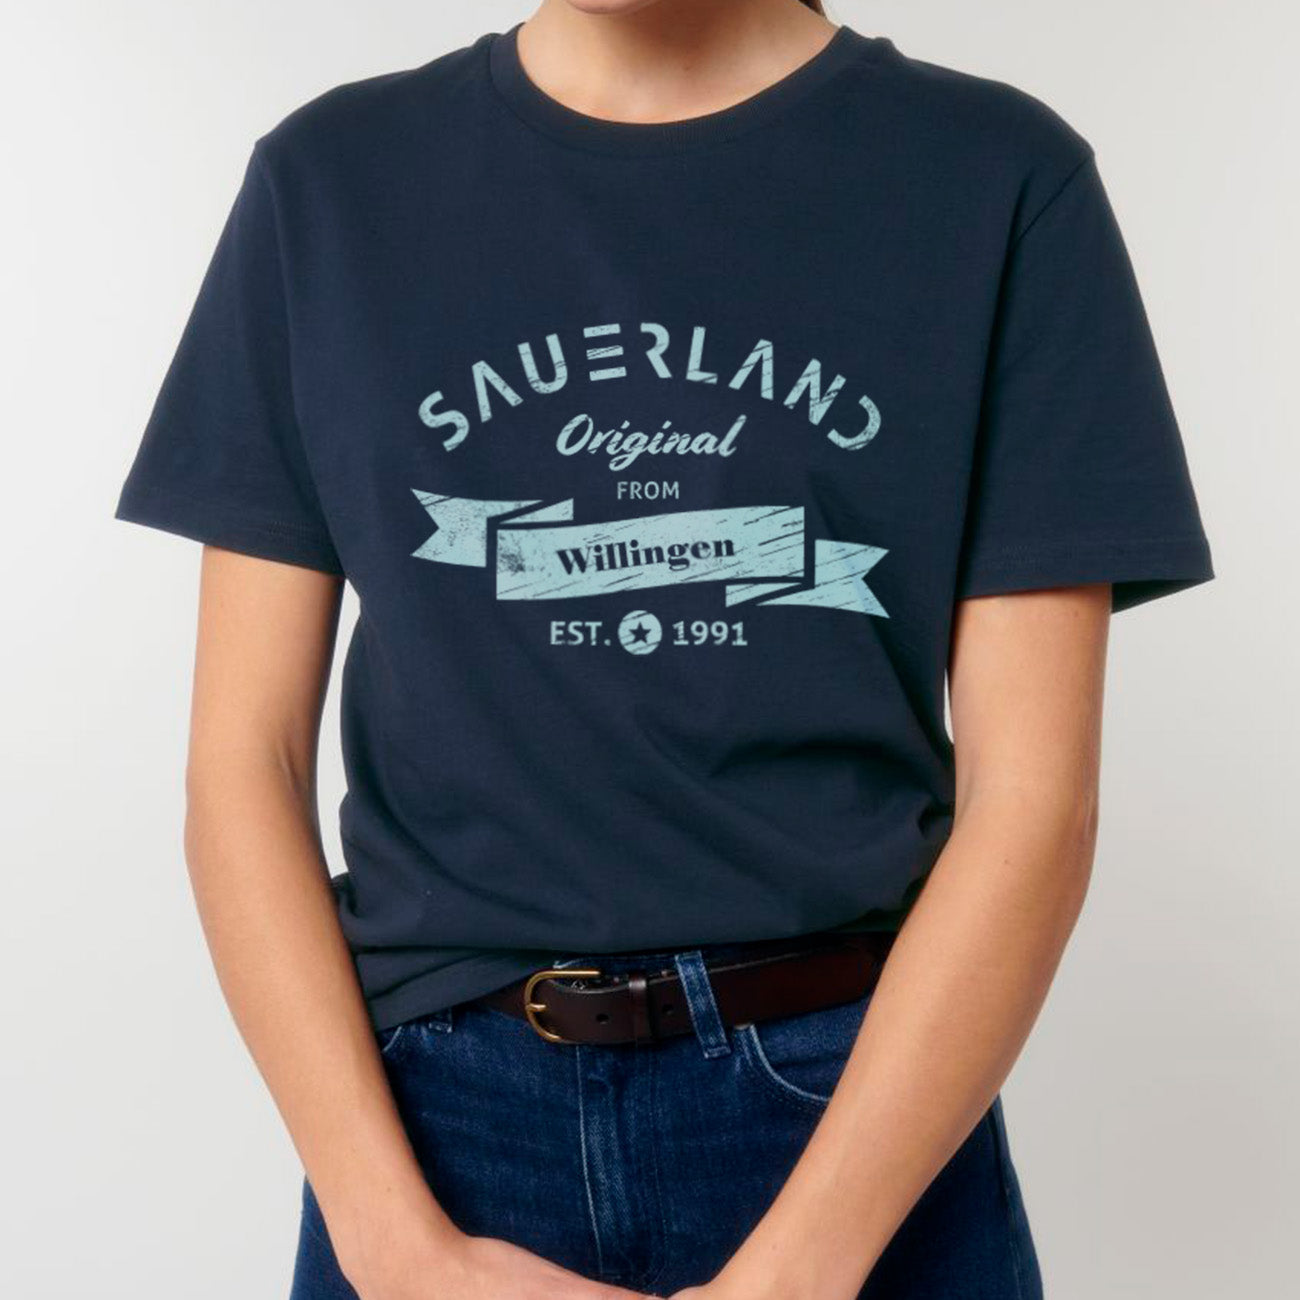 Sauerland T-Shirt in dunkelblau mit Aufdruck Sauerland Original from Villingen